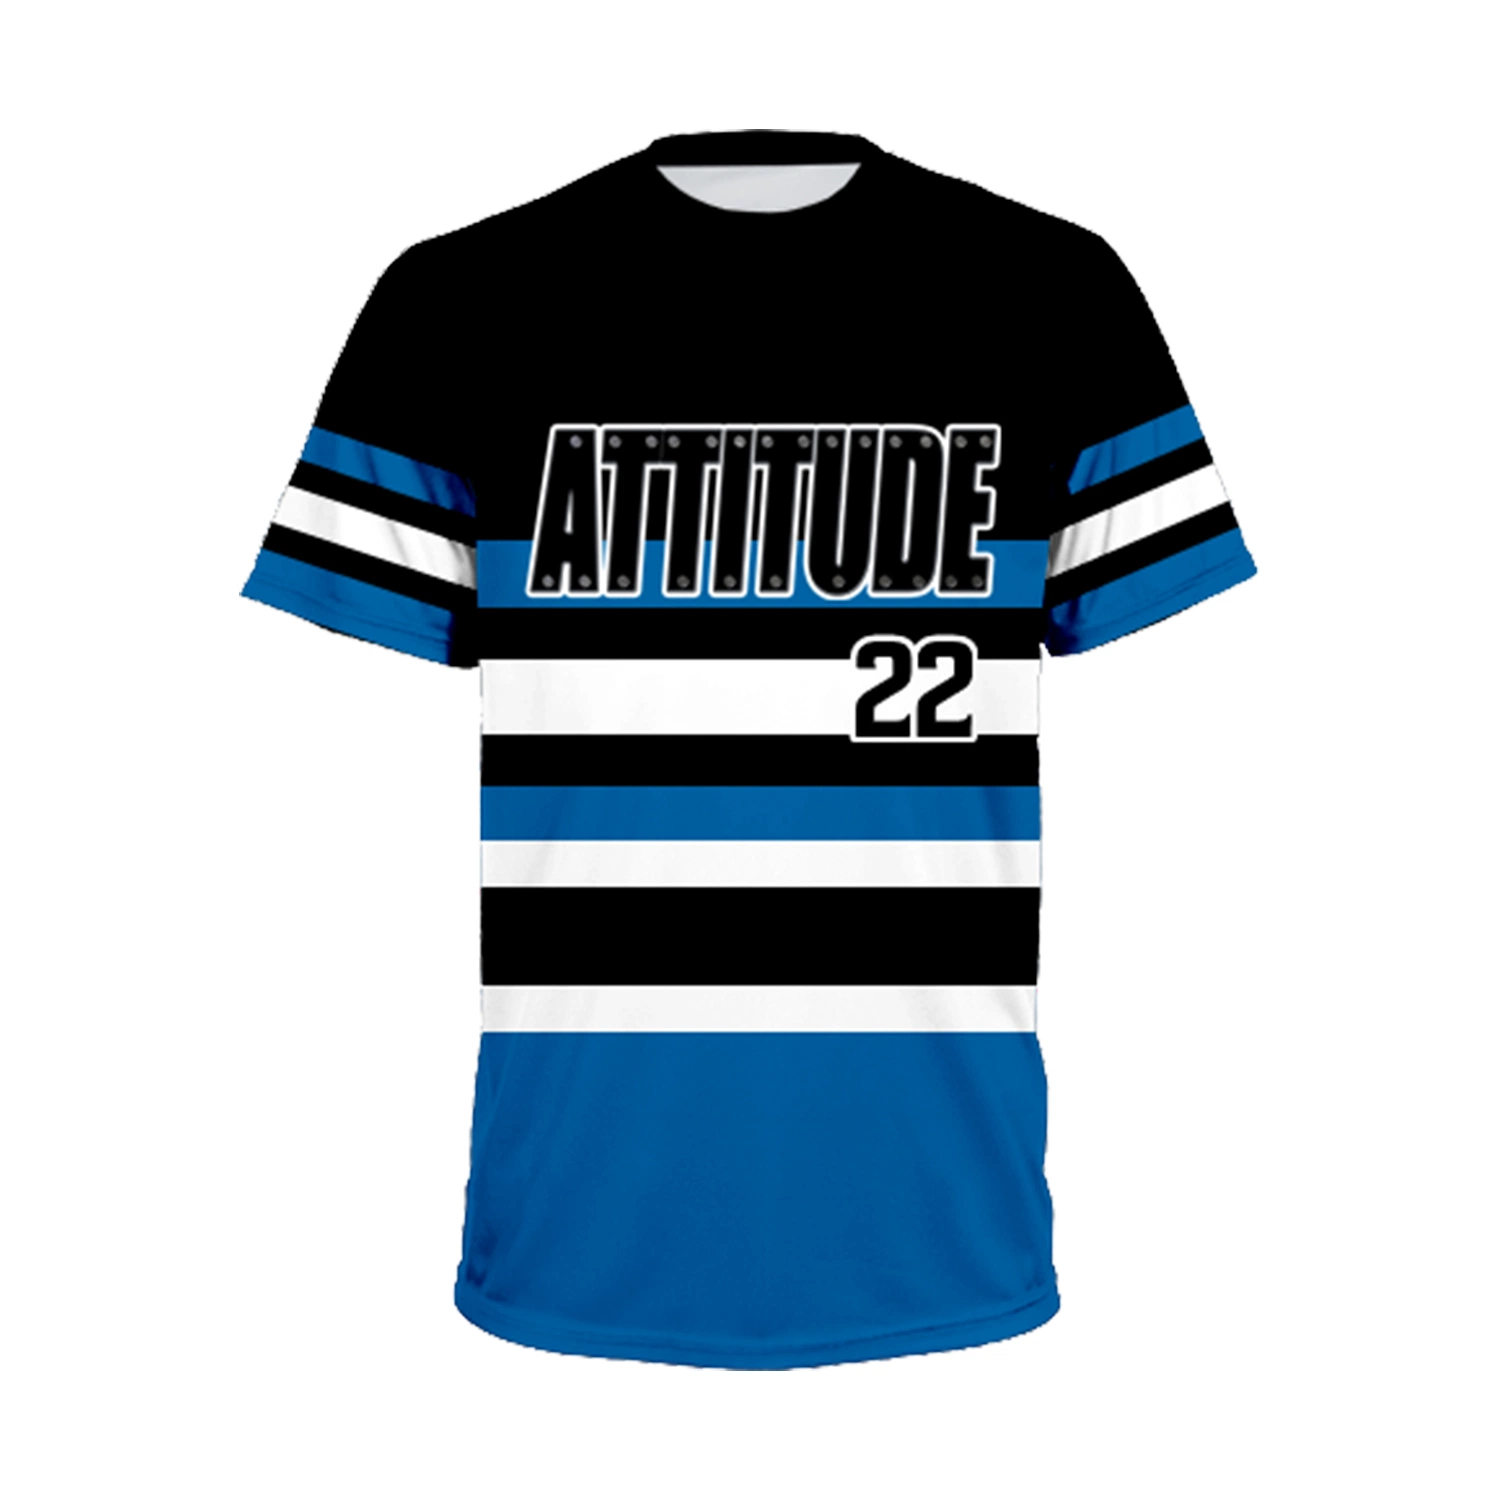 Calções de manga redonda com estampado e cores personalizadas Sublimation Baseball Camo Vestuário dos uniformes das camisolas